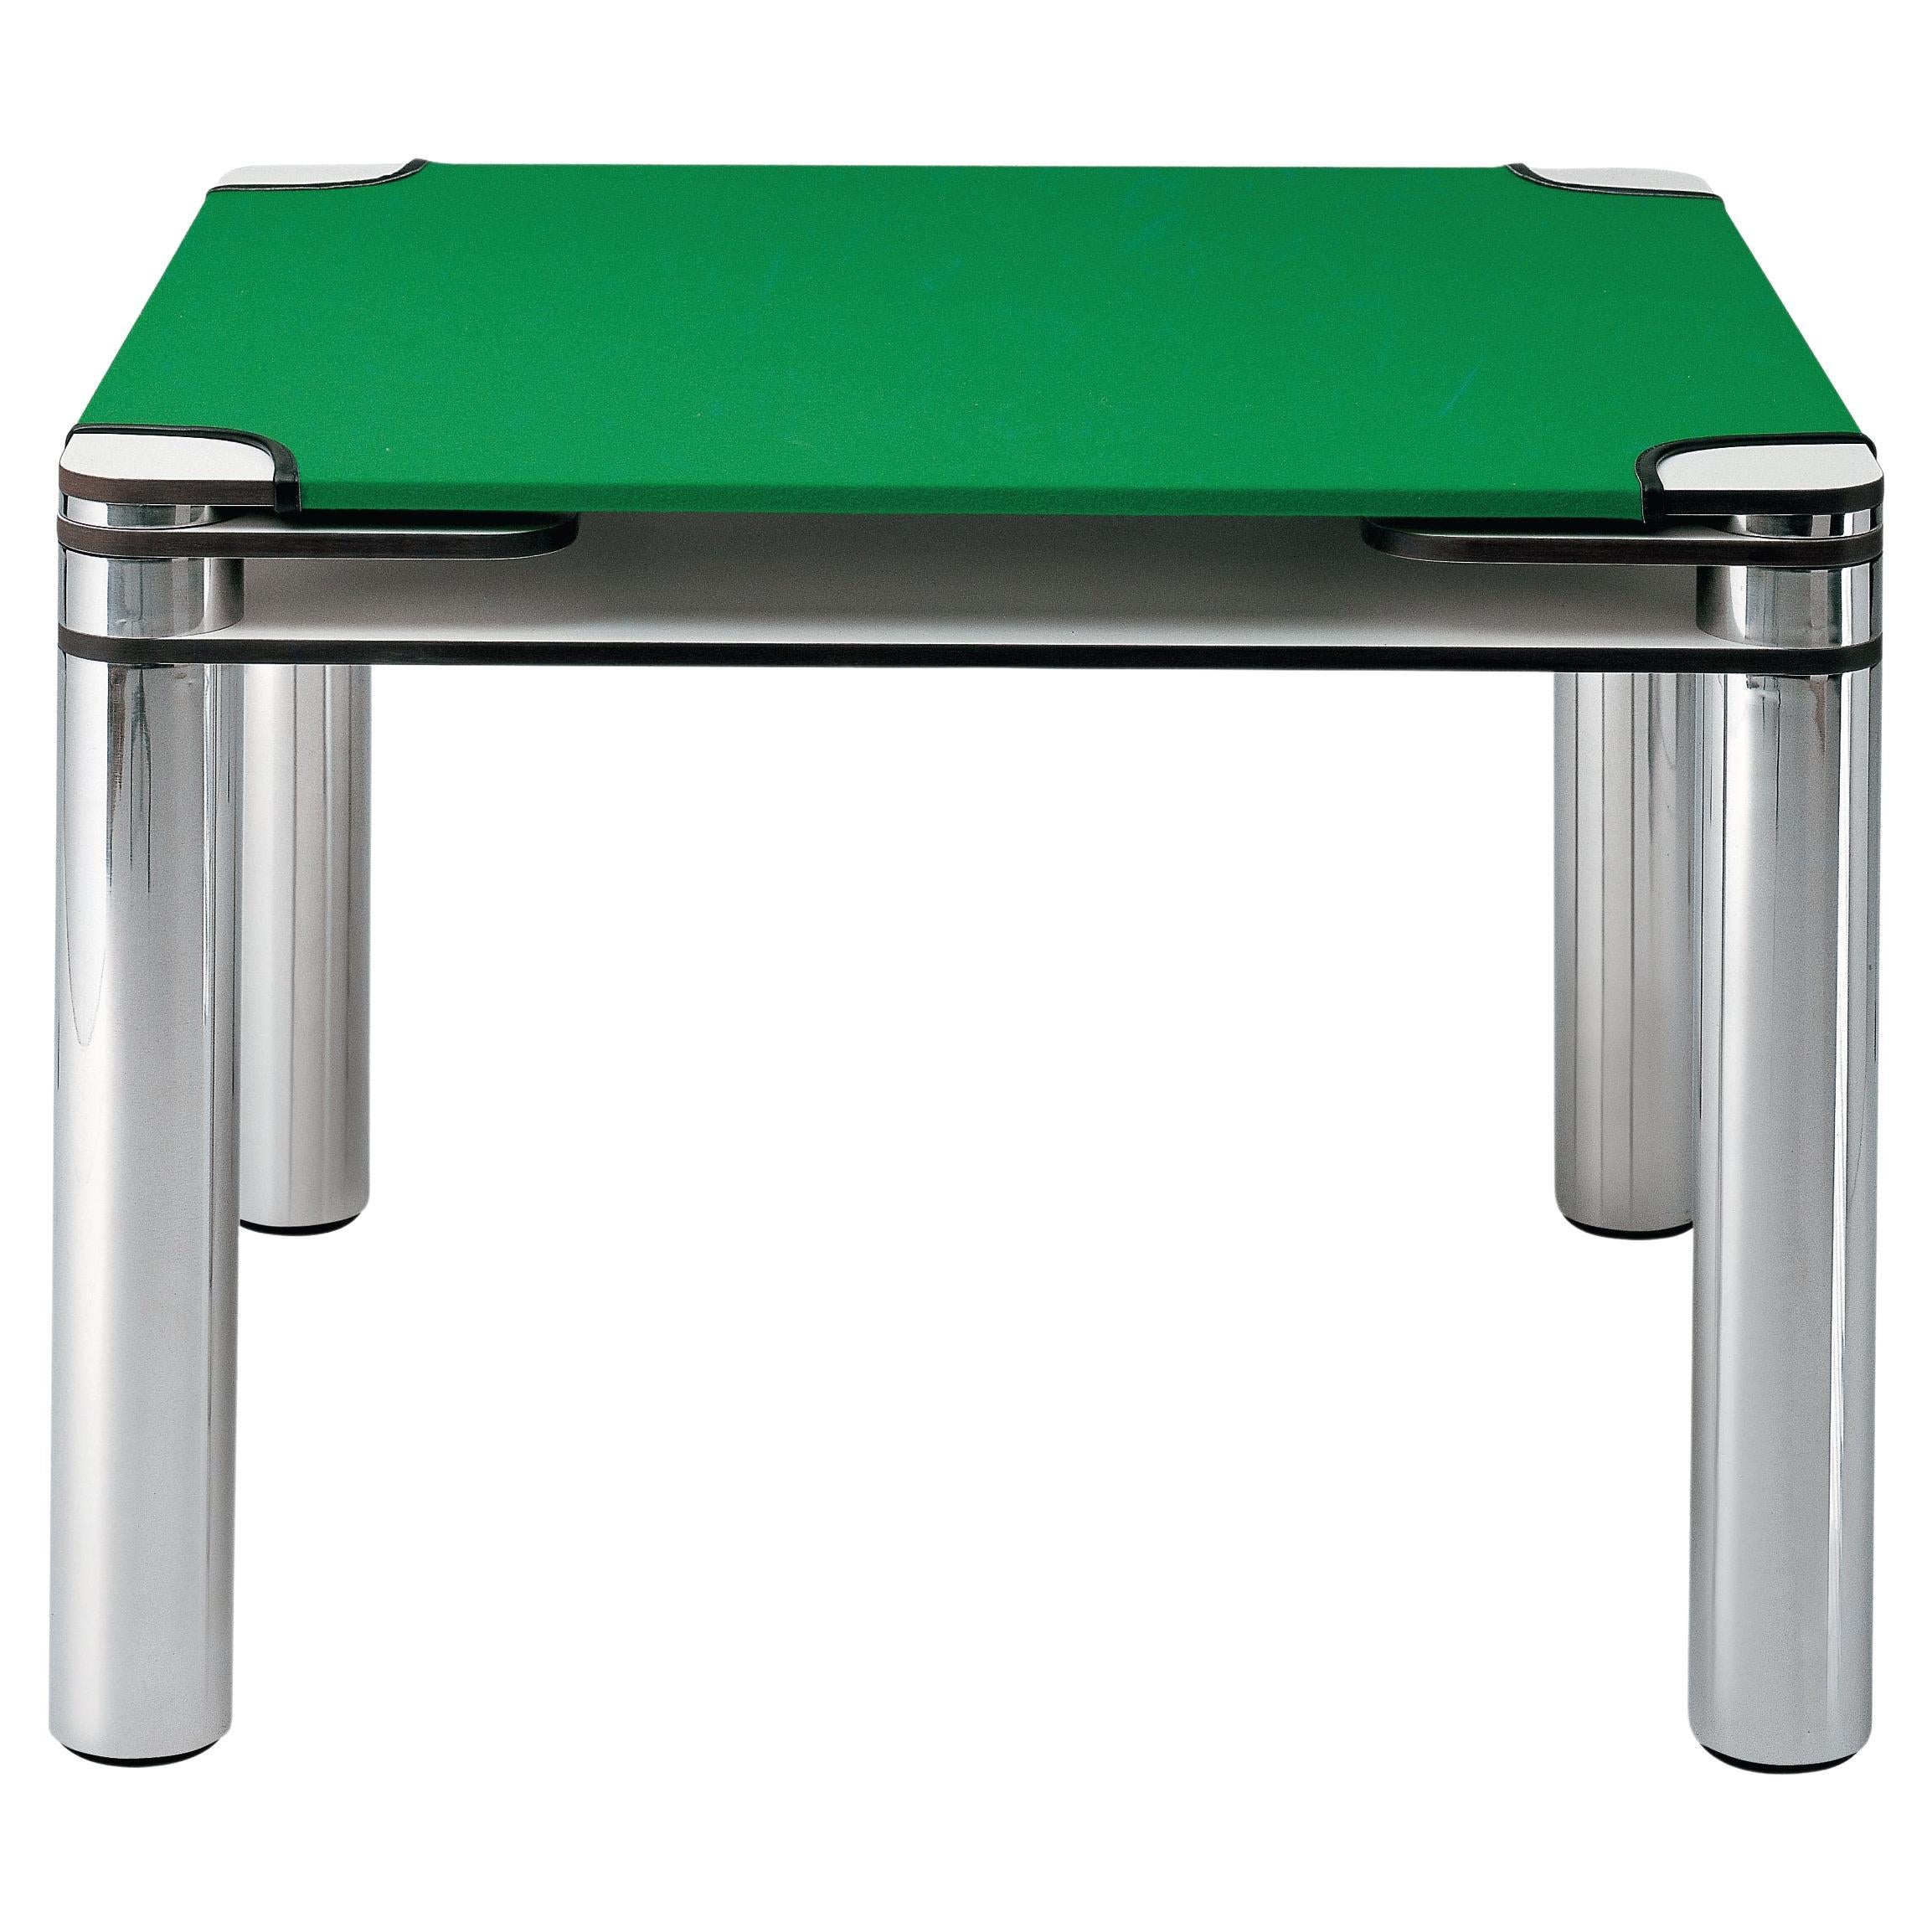 Zanotta Poker-Kartentisch aus weißem Kunststoff-Laminat und grünem Leder mit doppelter Platte